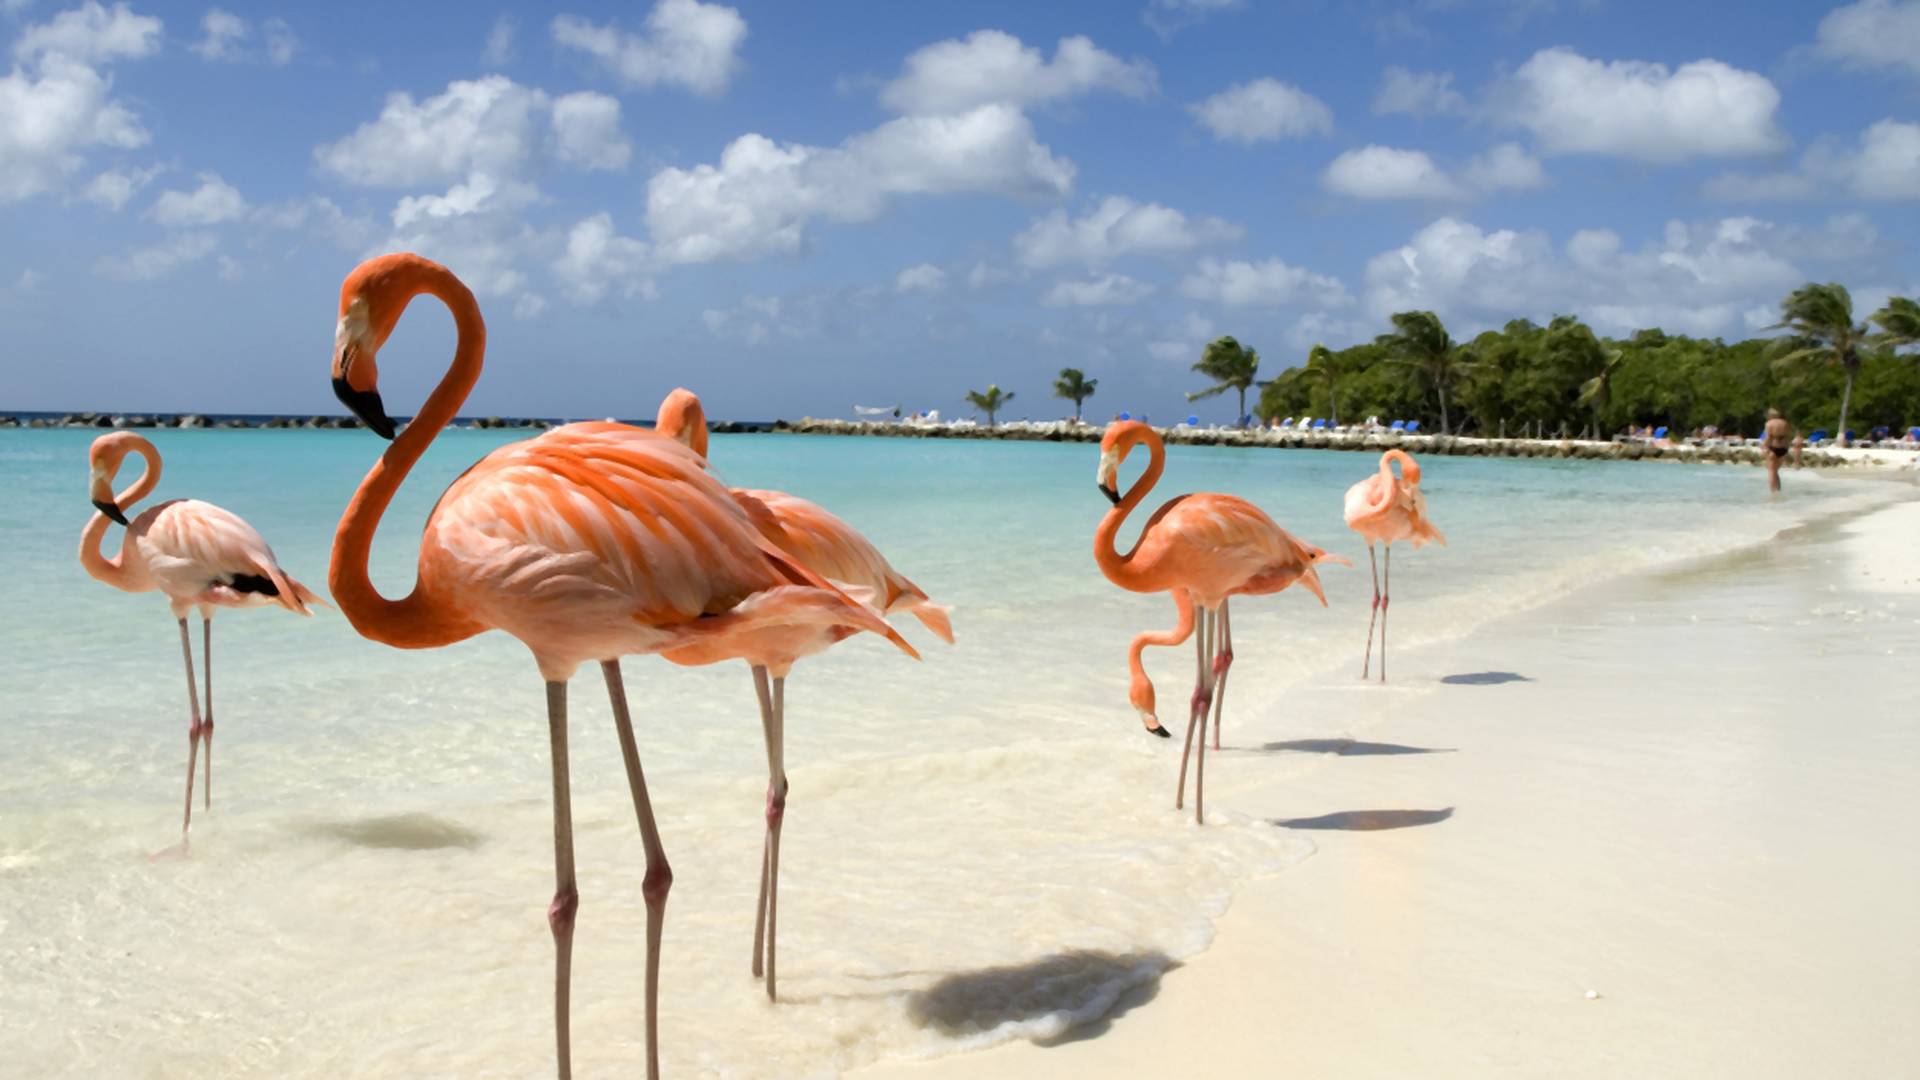 Myślisz o zmianie pracy? Możesz zostać opiekunem flamingów na Bahamach